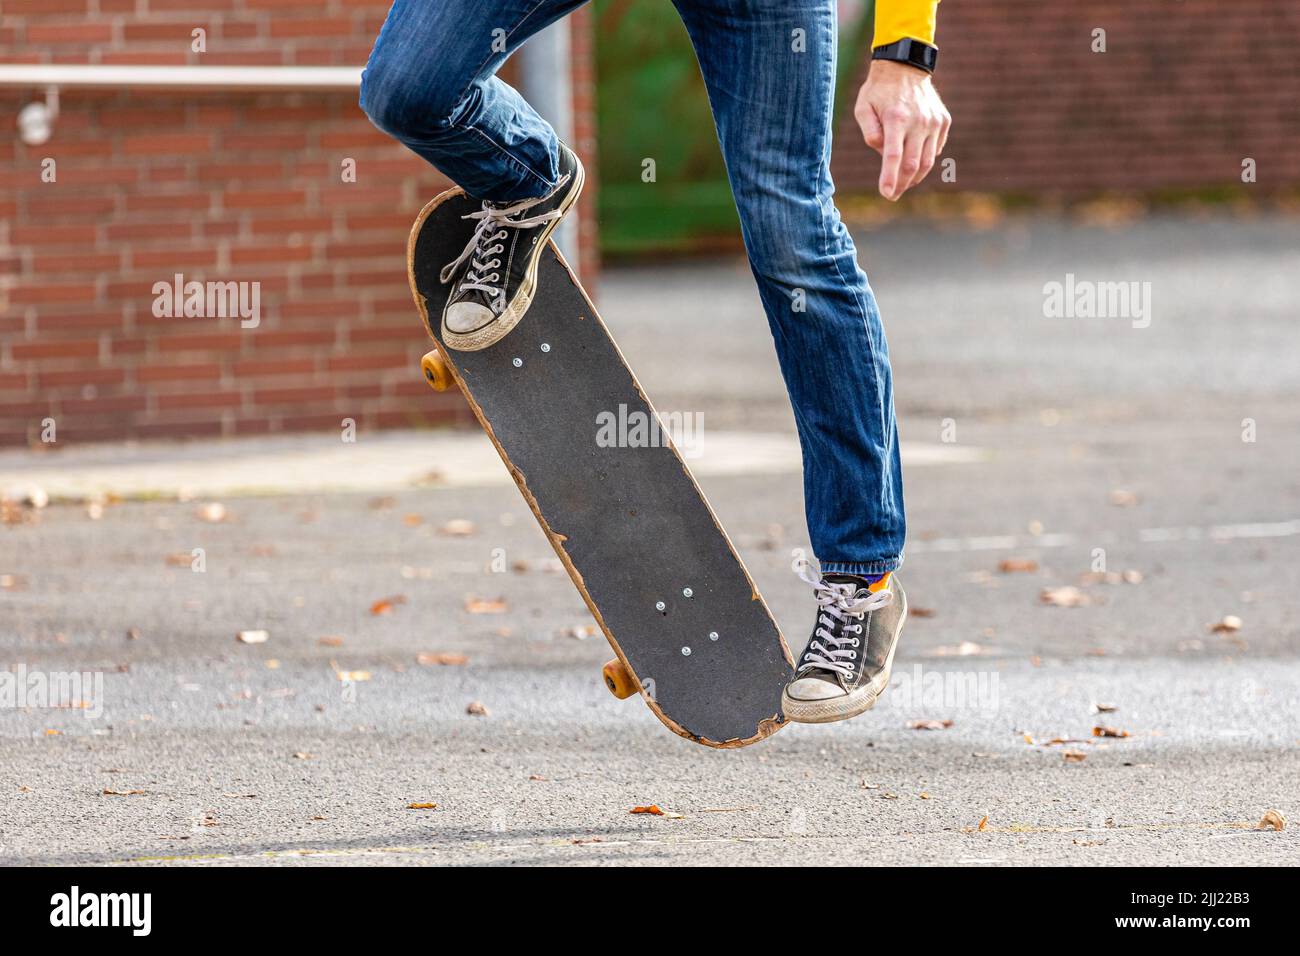 Eine Person, die einen Kickflip mit dem Skateboard macht Stockfoto